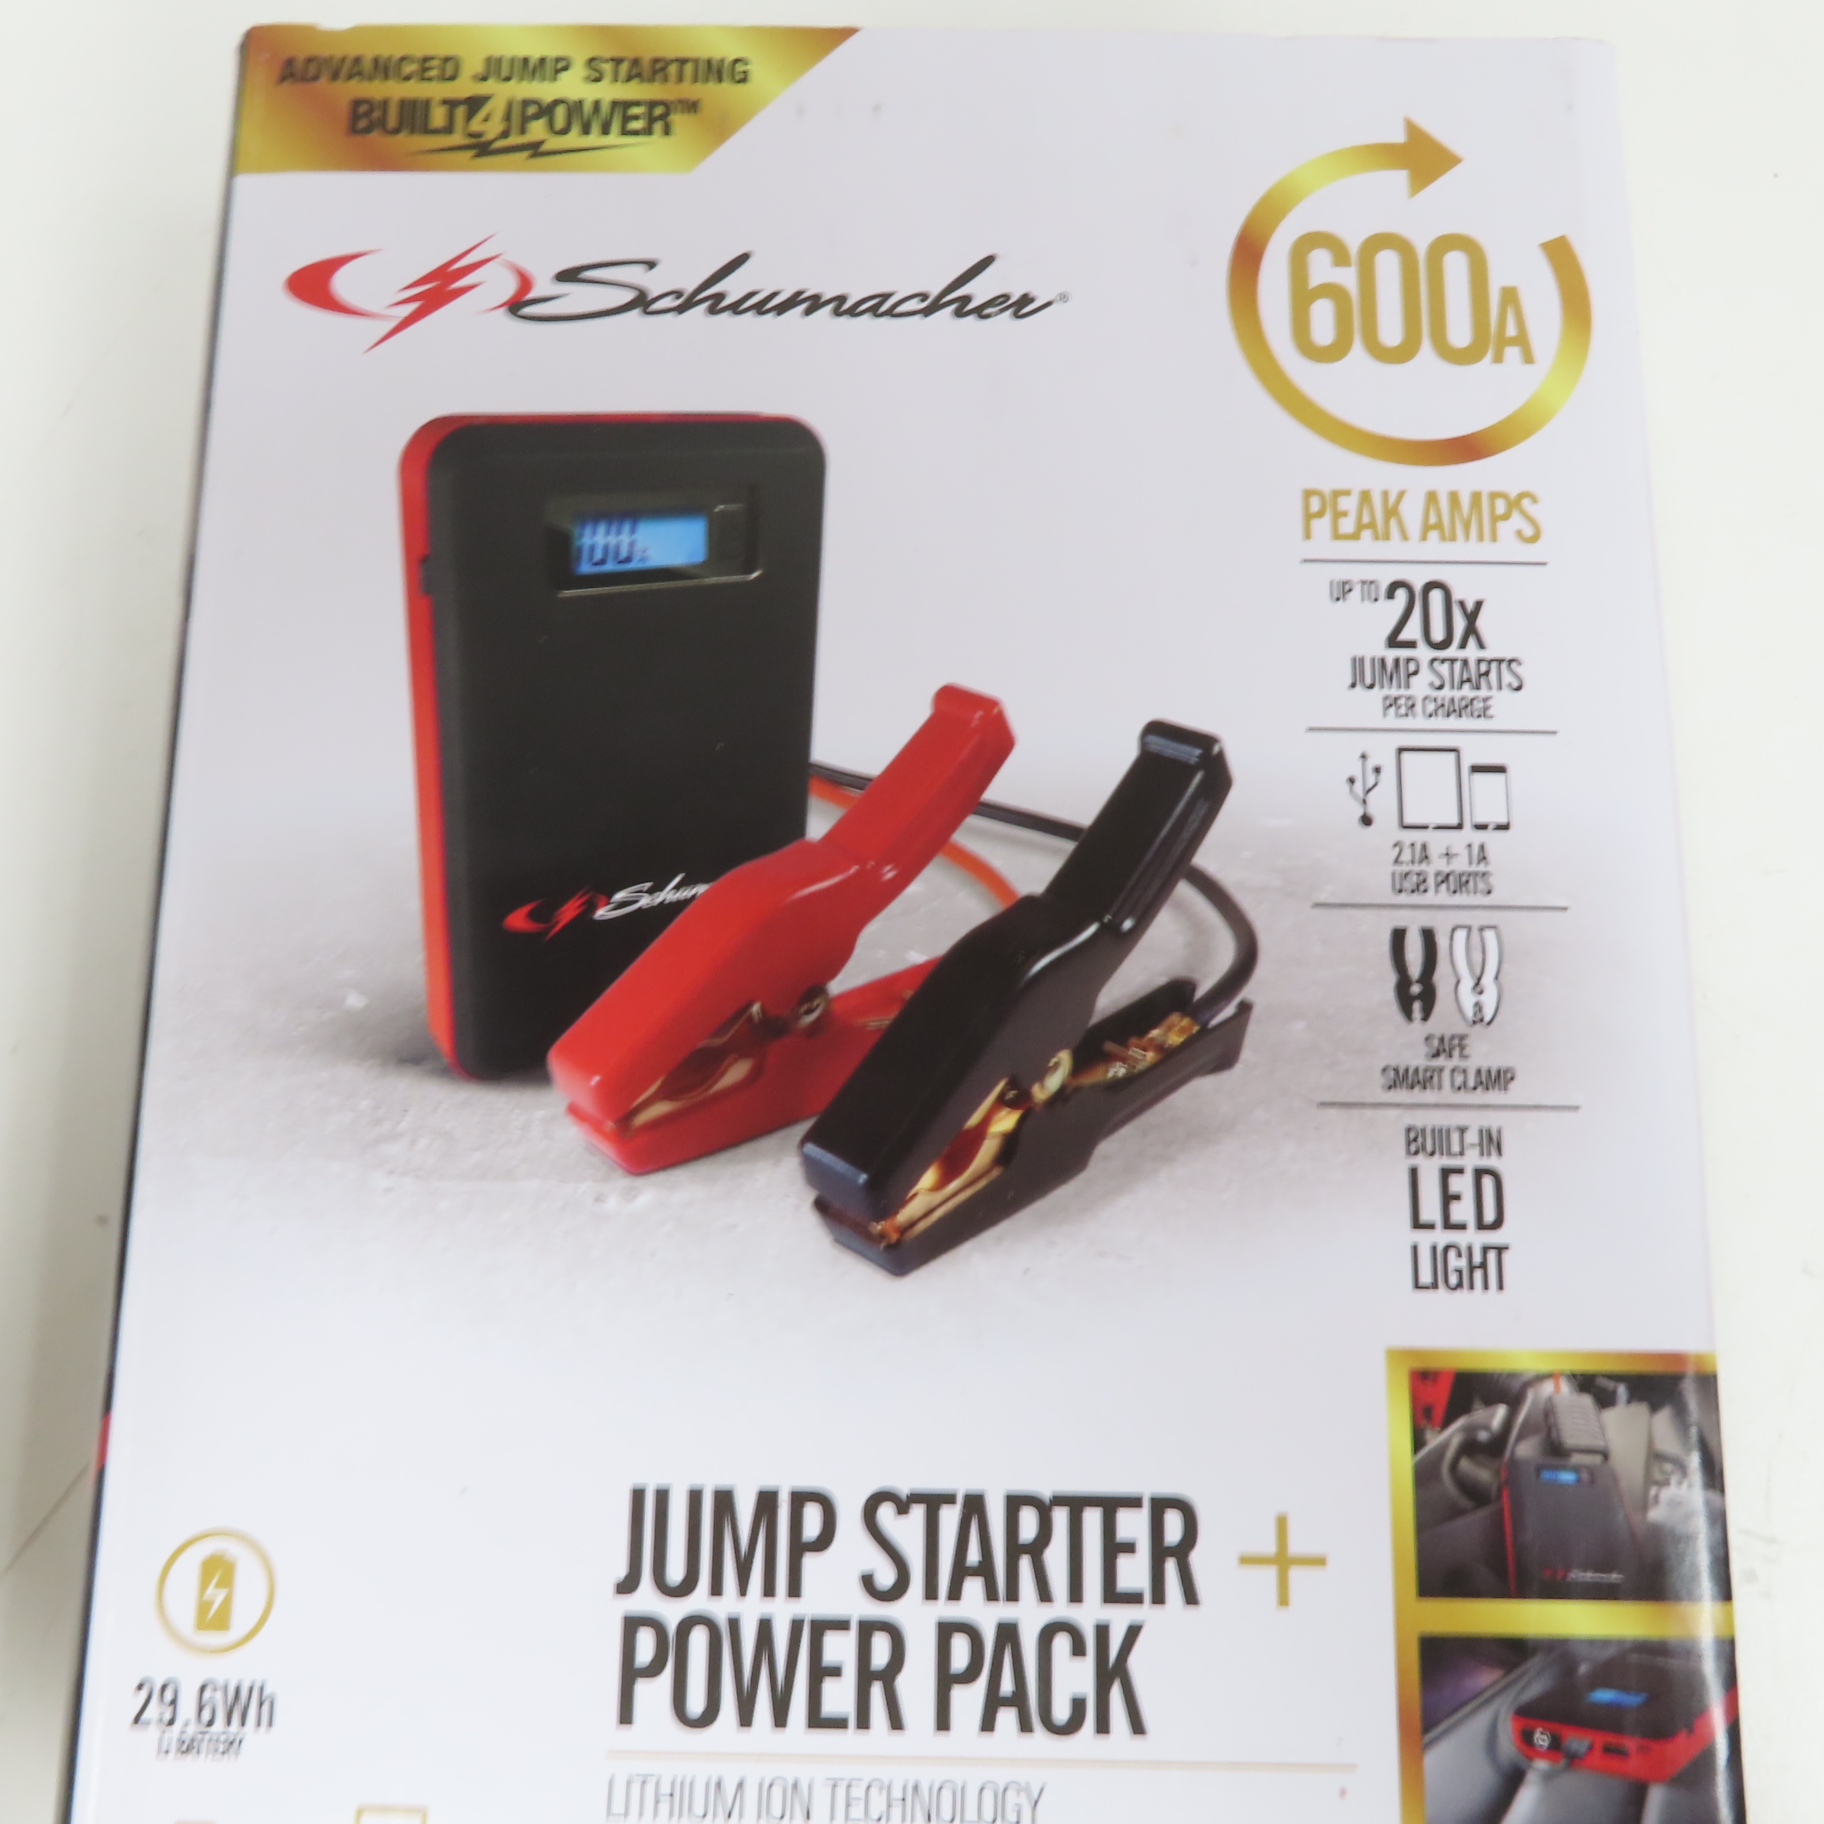 Schumacher 600 Peak Amp Lithium Jump Start & Power Pack SL1312